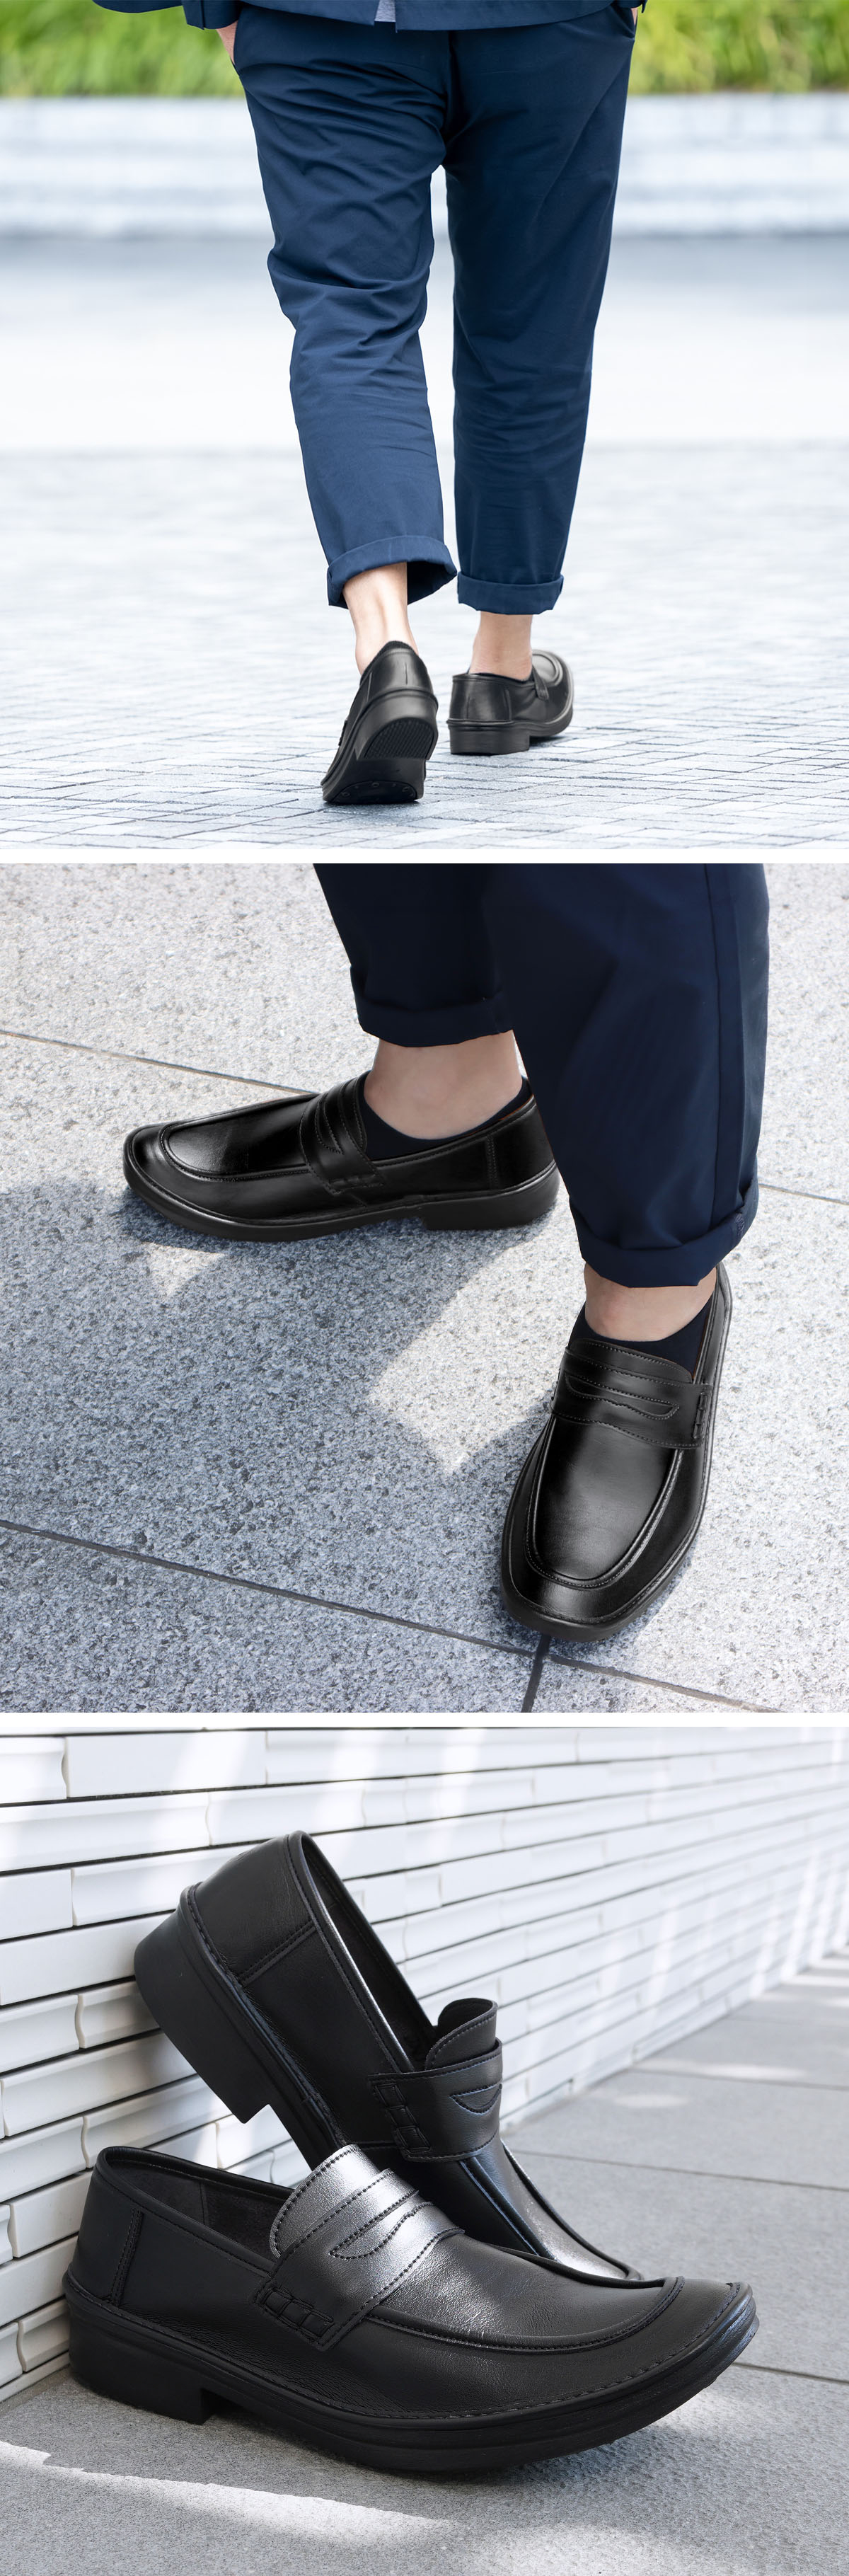 メンズ メンズローファー コインローファー ロングノーズ ビジネス フォーマル コンフォート 旅行 学生靴 紳士靴 日本製 アイザック